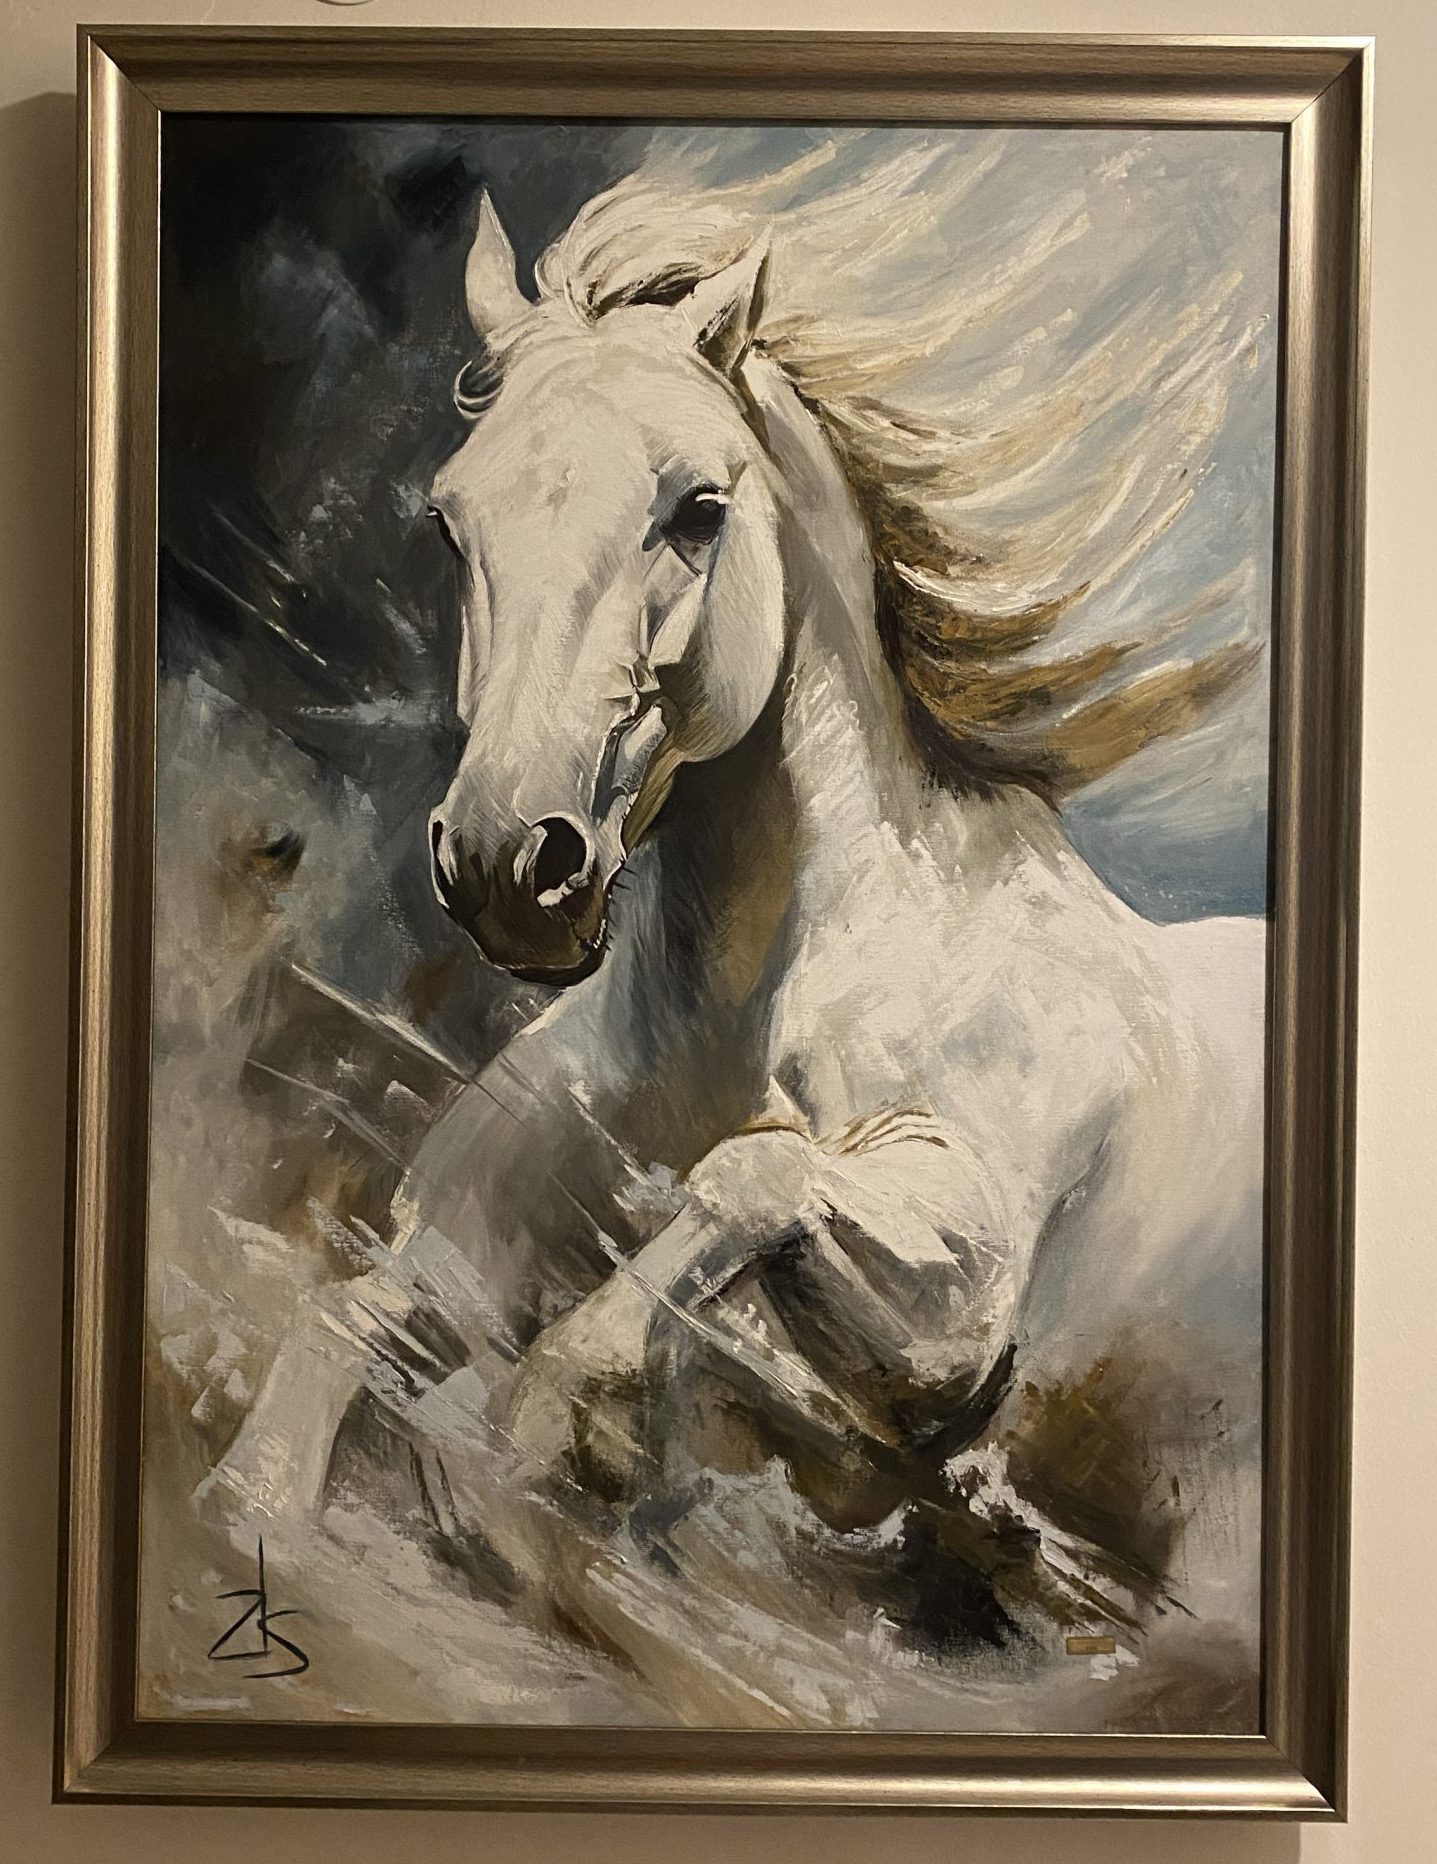 ZSK  At Resmi AI yağlıboya tablo / AI Horse Oil painting on canvas – Elyapimitablo.com